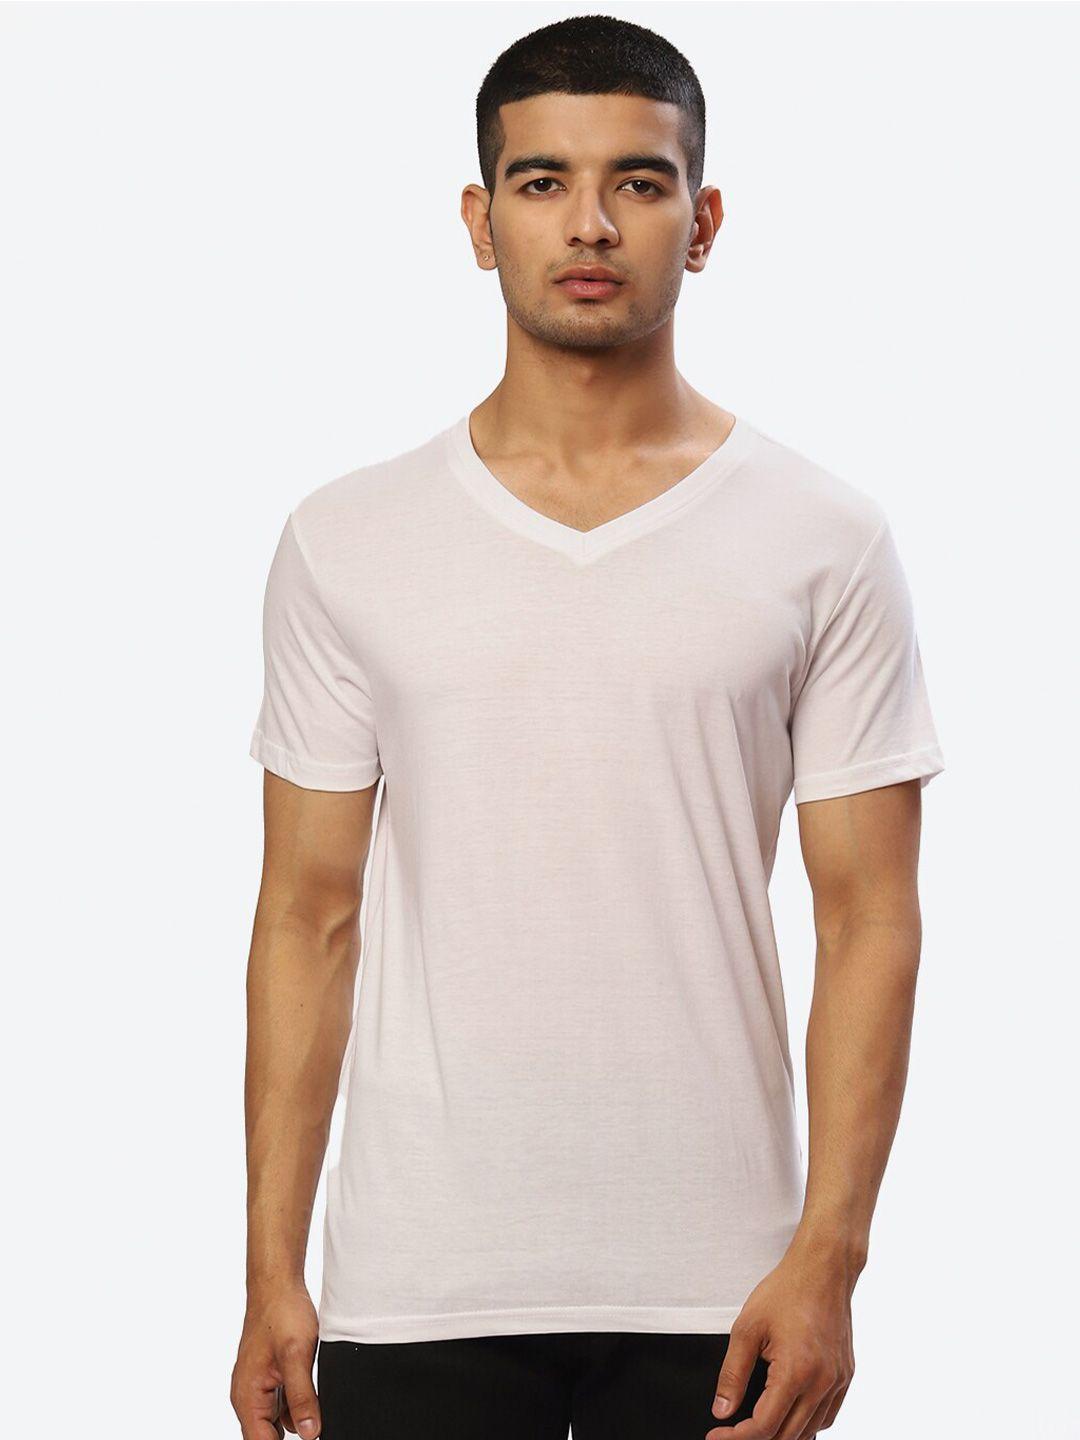 2bme slim fit v-neck cotton t-shirt